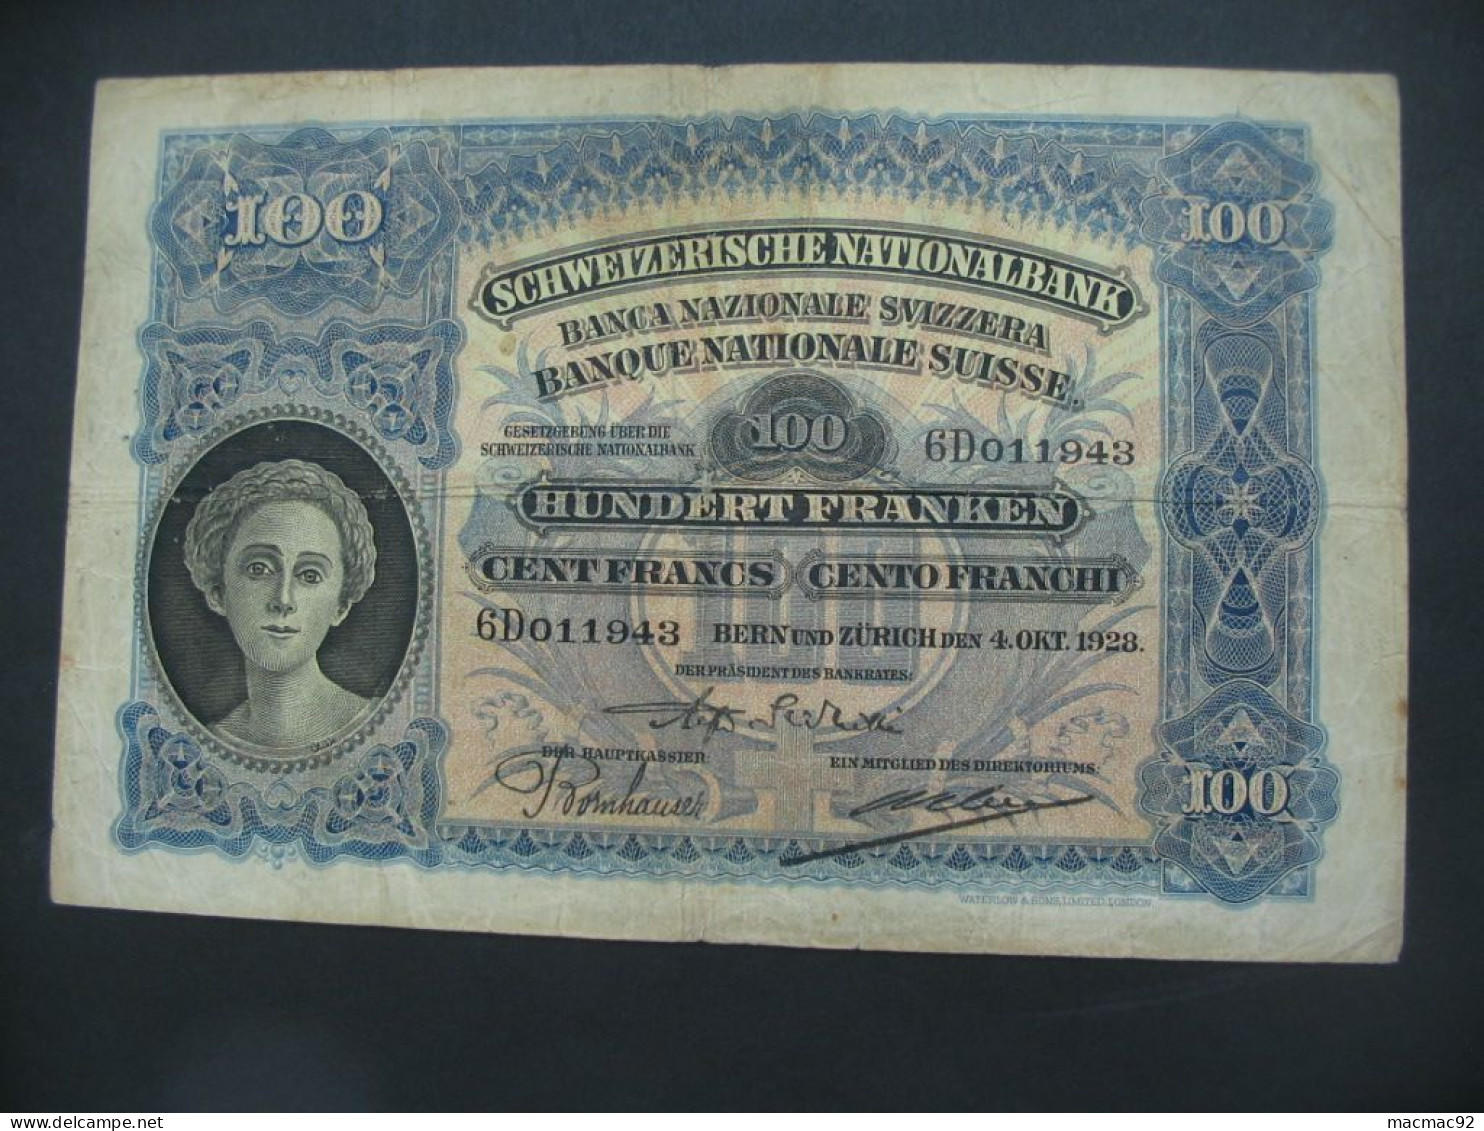 RARE Billet Suisse - 100 Francs 1928 Schweizerische Nationalbank **** EN ACHAT IMMEDIAT **** - Schweiz